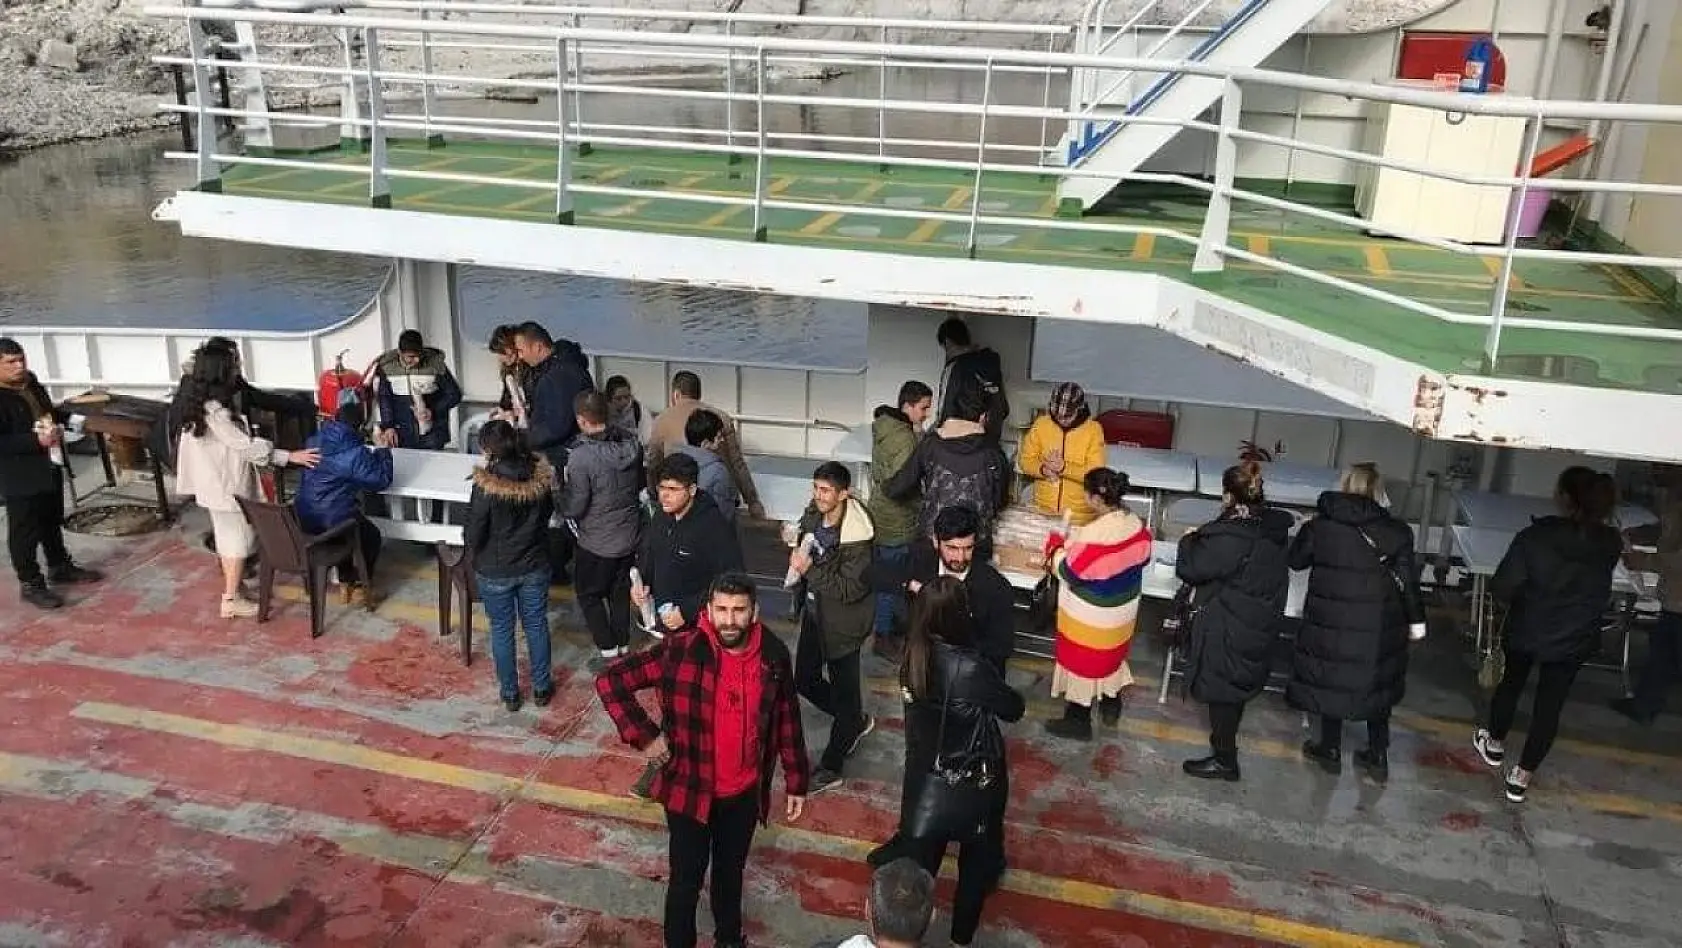 Tunceli'de engelliler için feribot gezisi